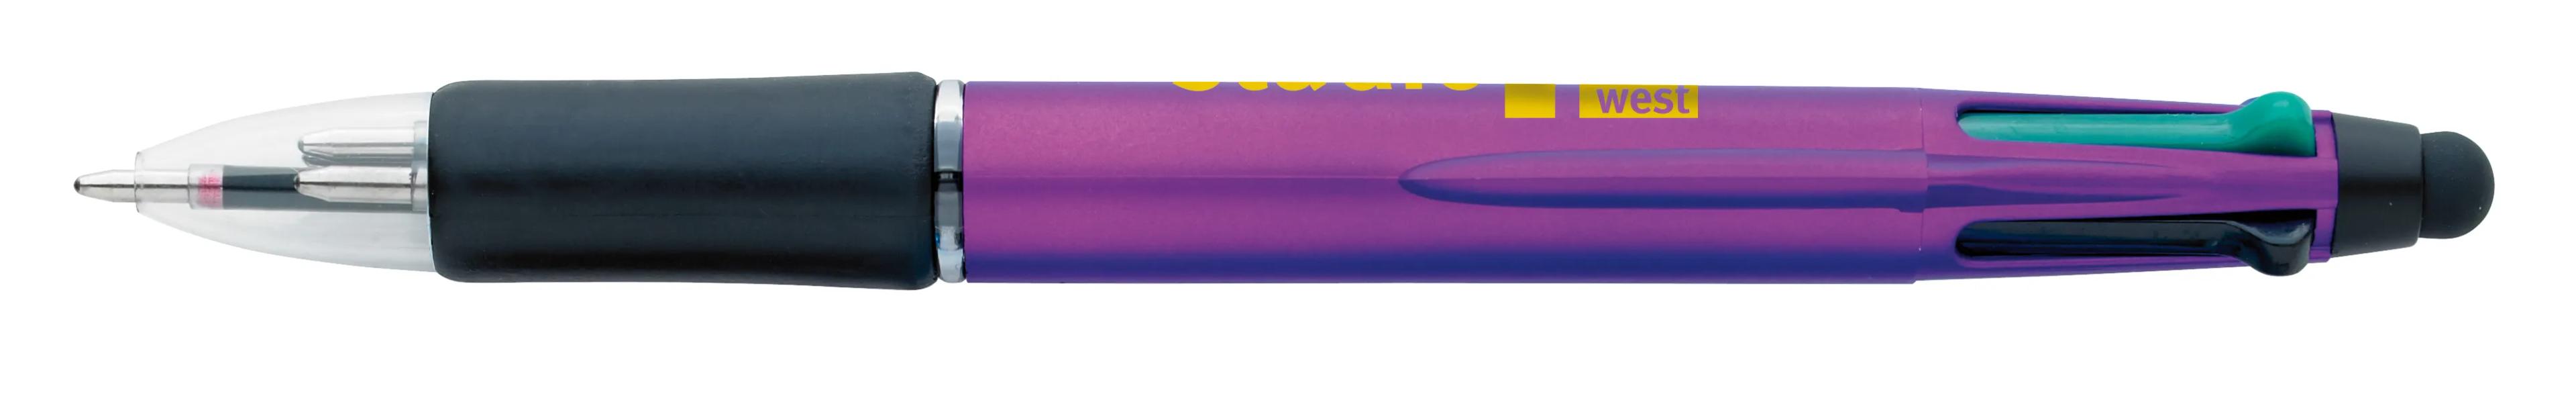 Orbitor Metallic Stylus Pen 52 of 56